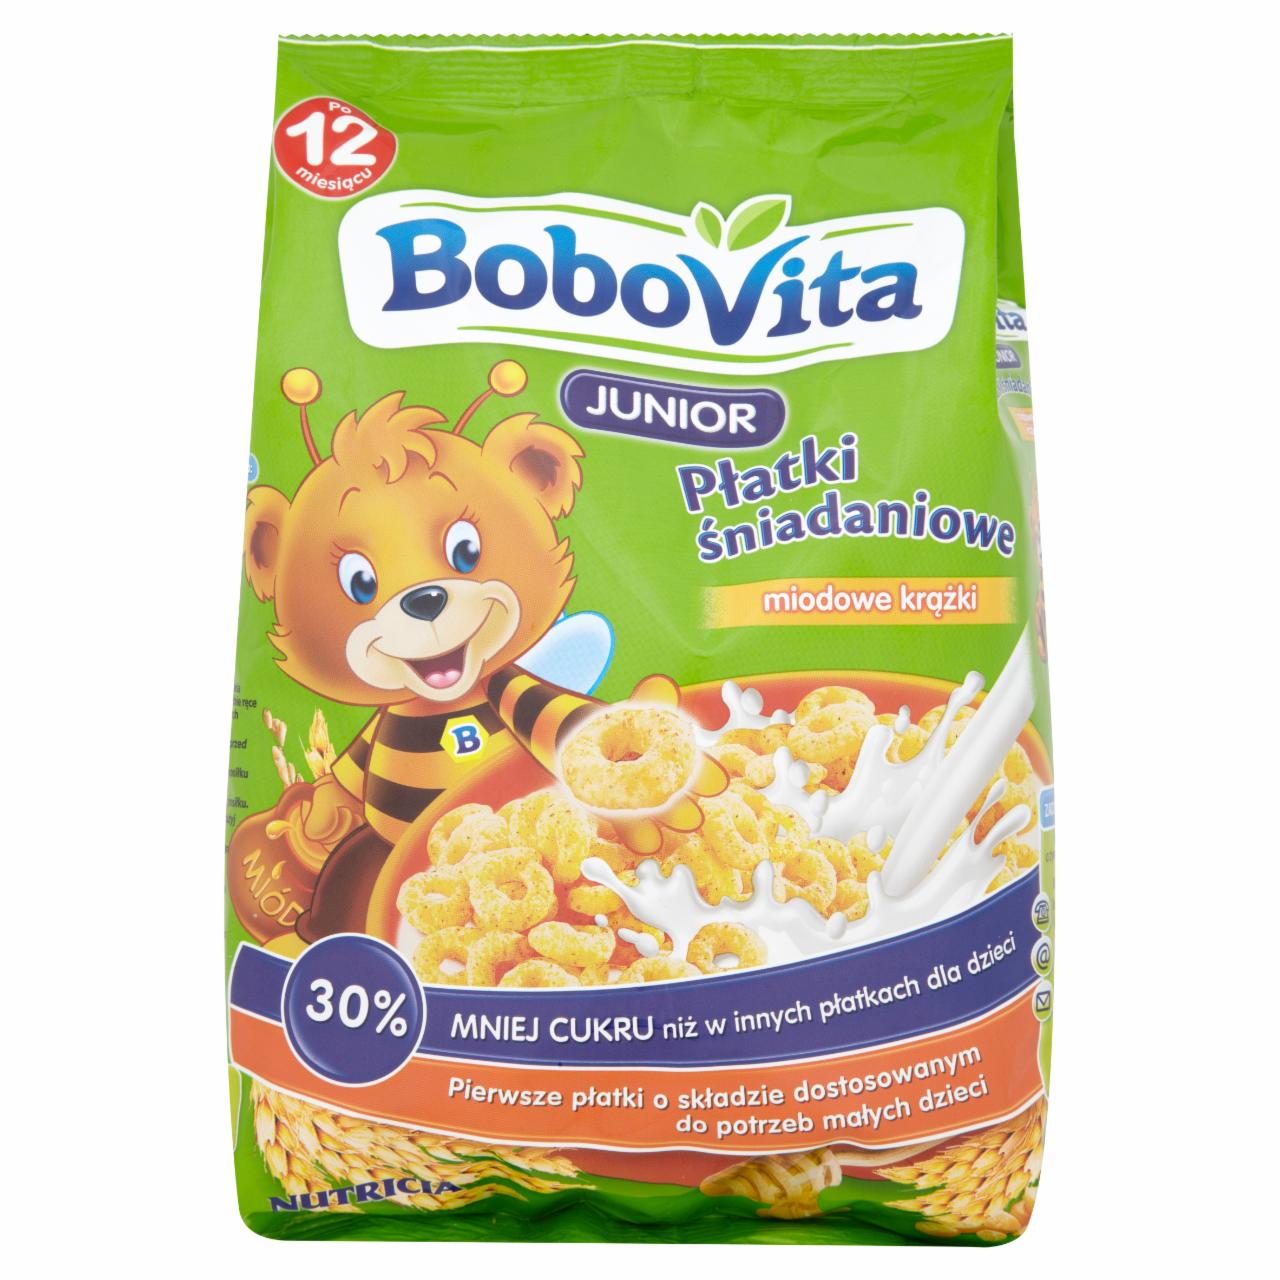 Zdjęcia - BoboVita Junior Płatki śniadaniowe miodowe krążki po 12 miesiącu 200 g